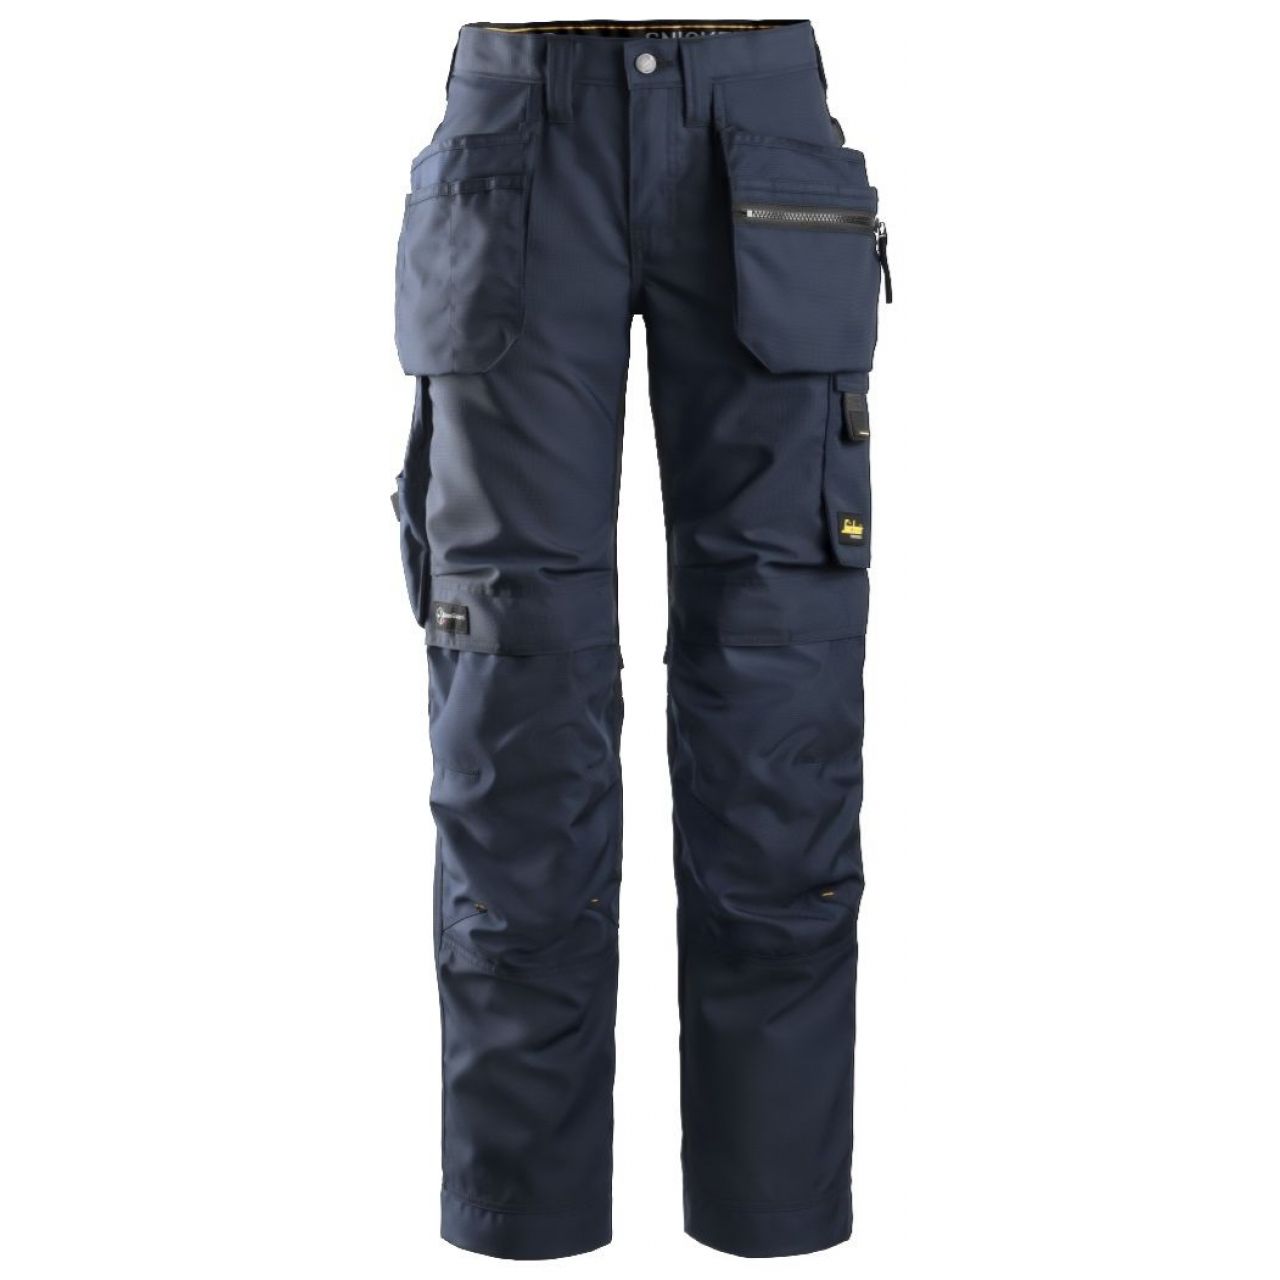 Pantalon de mujer AllroundWork+ con bolsillos flotantes azul marino-negro talla 044